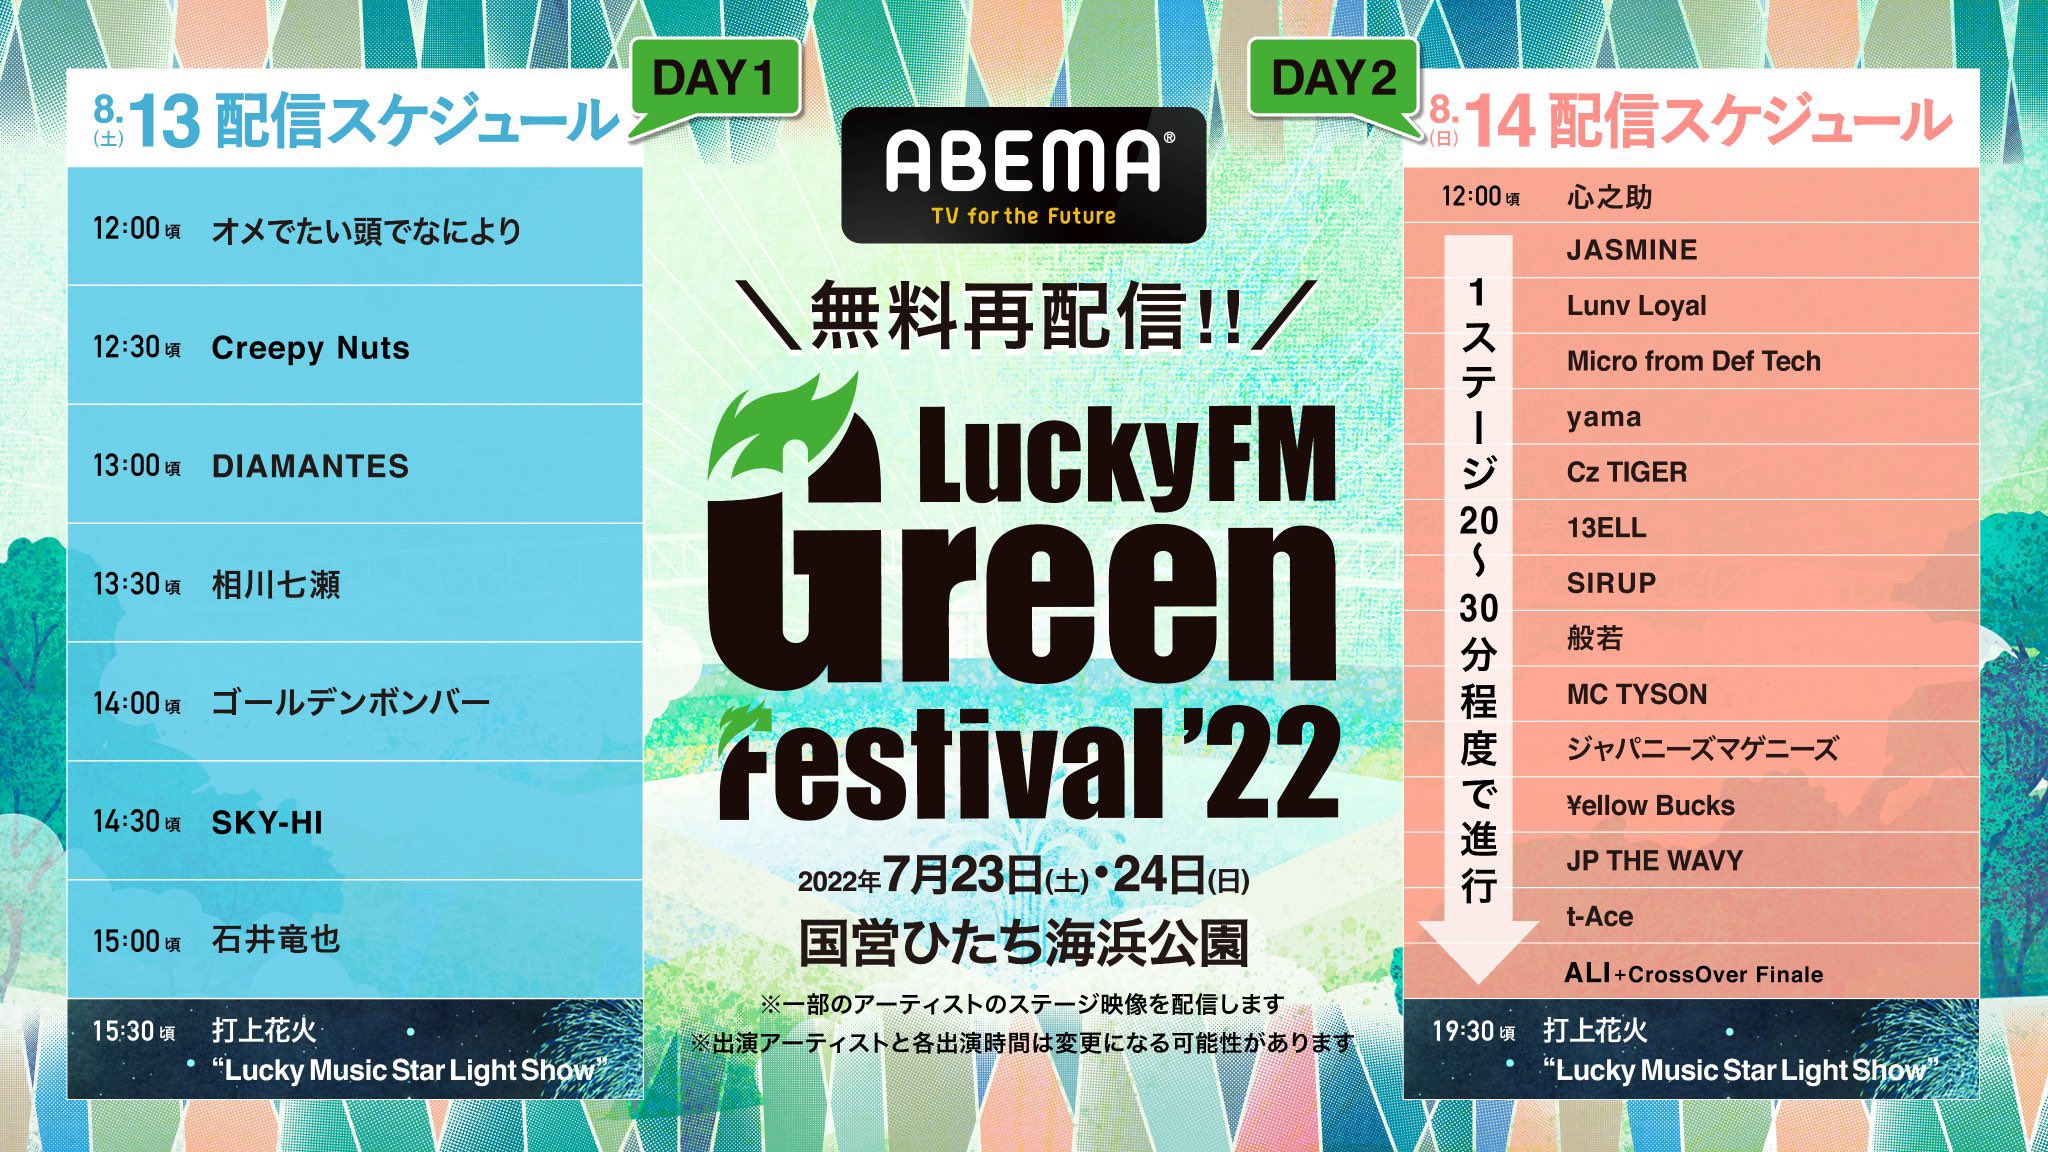 安い買付 LuckyFM GreenFestival 7月23日 2枚 音楽フェス